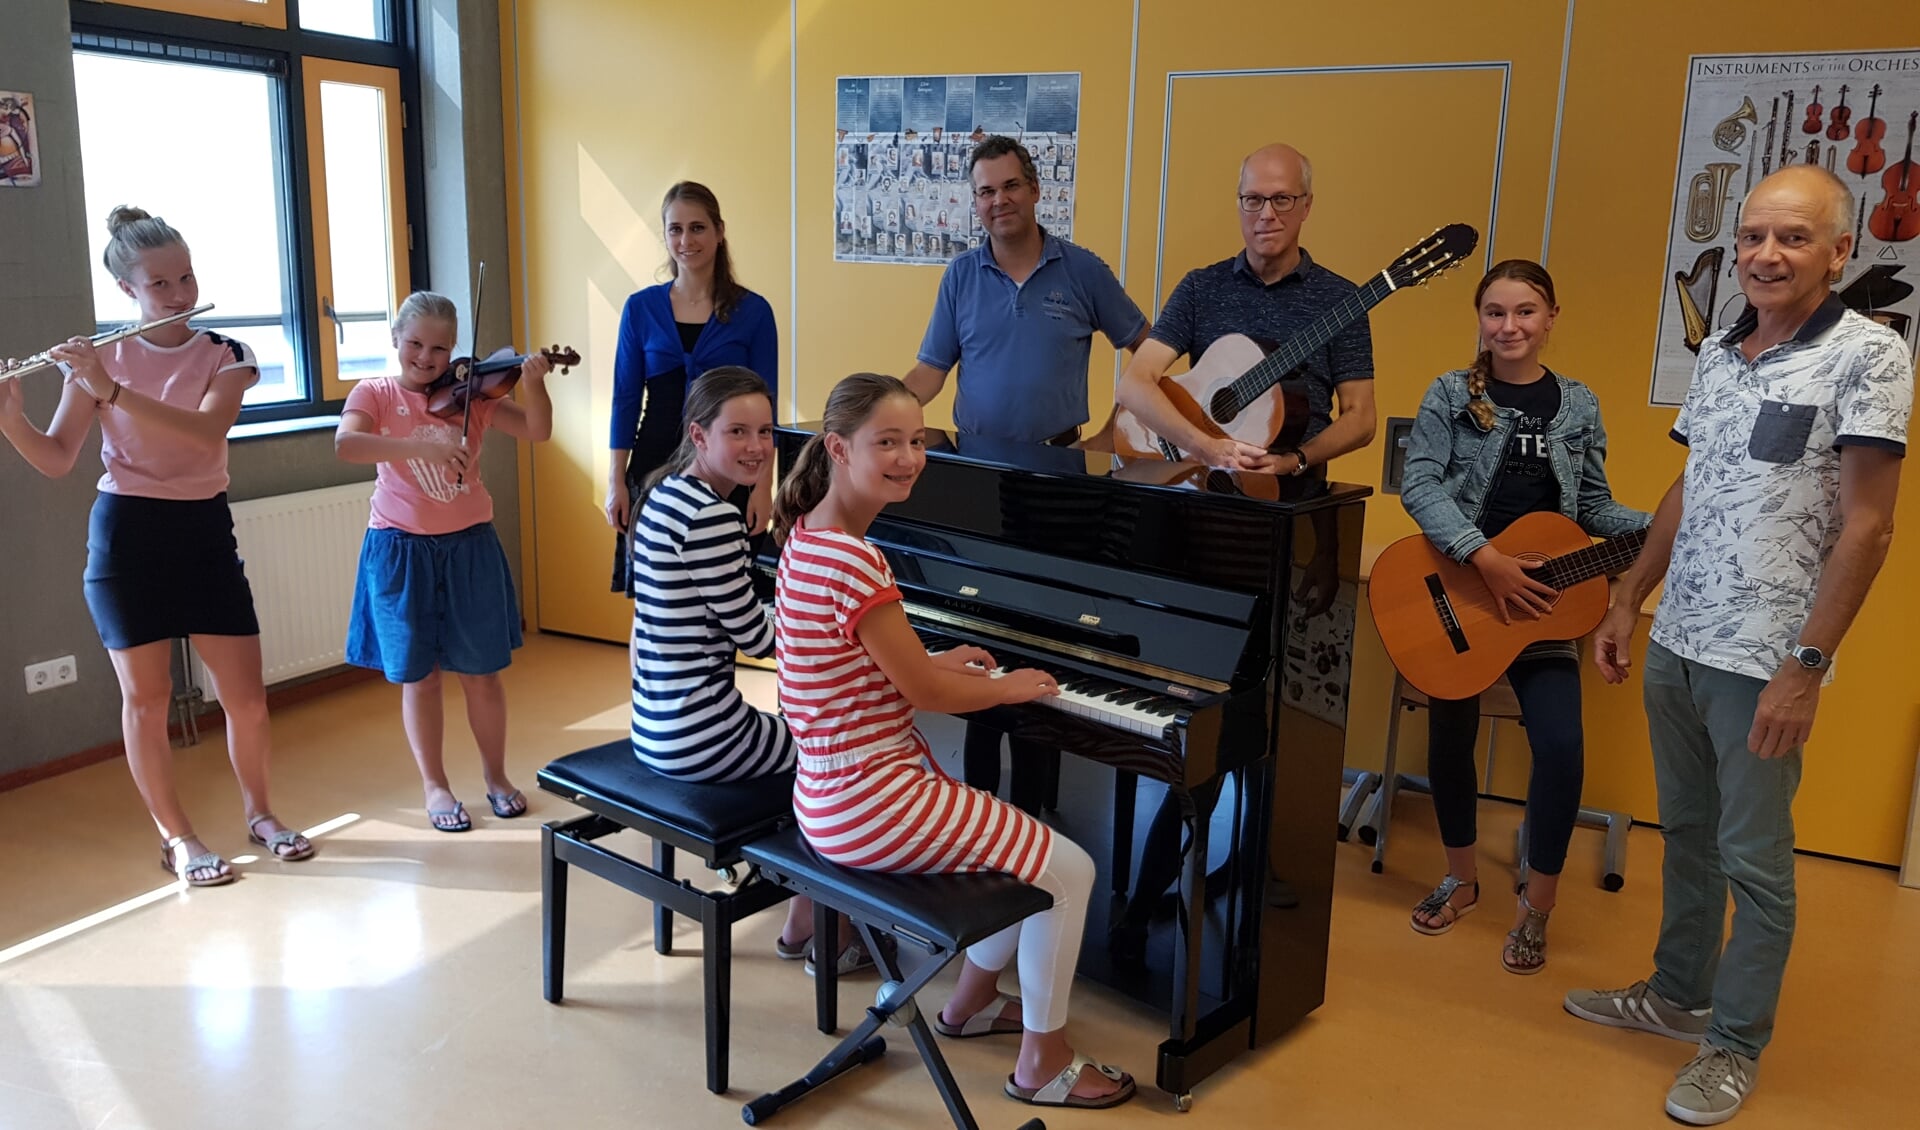 • Muzieklessen bij Muziekschool van Oranje zijn vooral leuk, vinden de leerlingen.